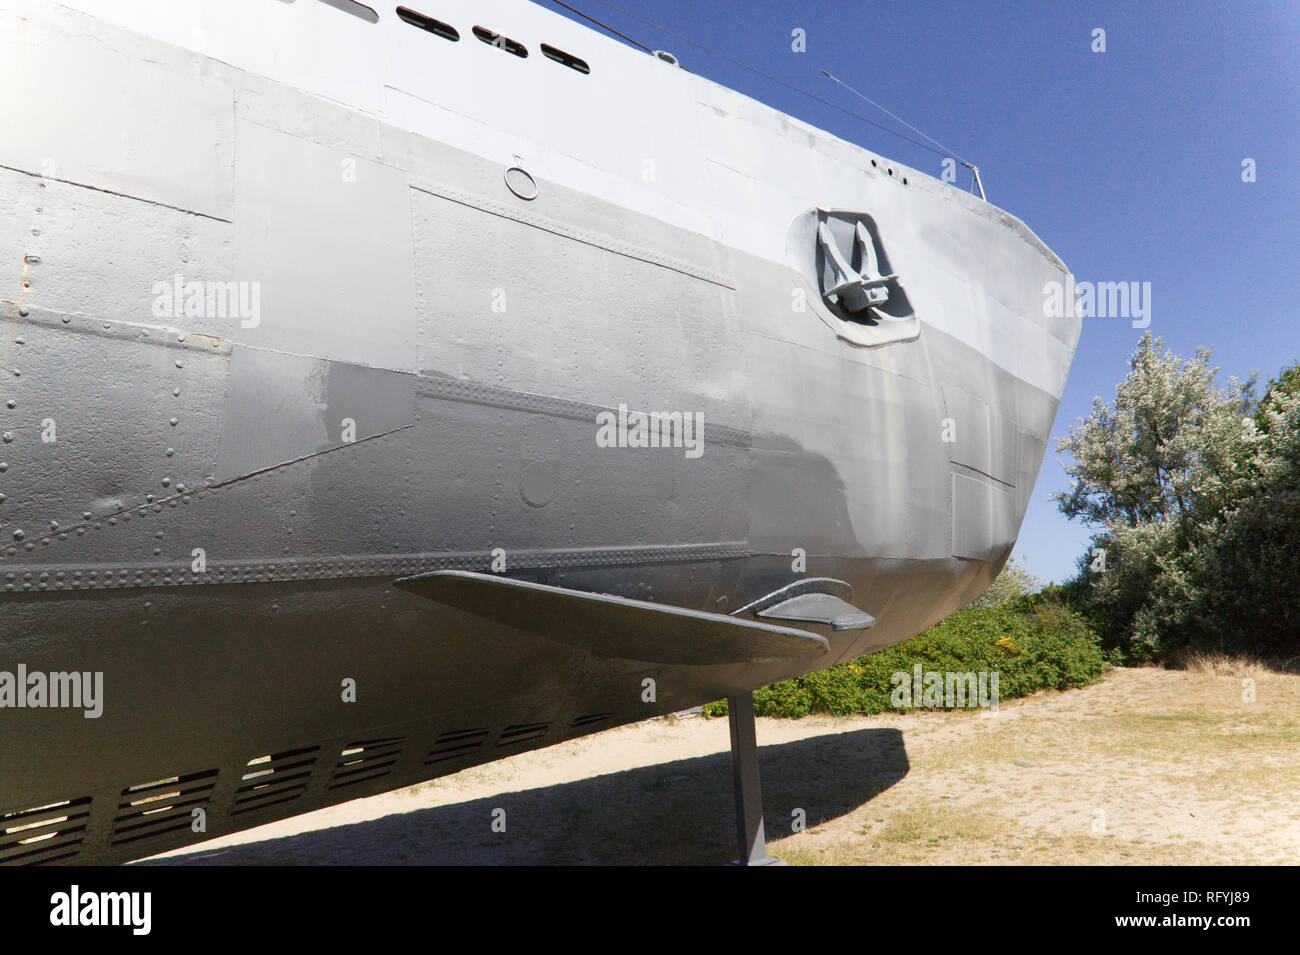 July 6, 2018- Kiel, Germany: A U-995 Submarine Bow at the Nava Museum in Kiel Stock Photo